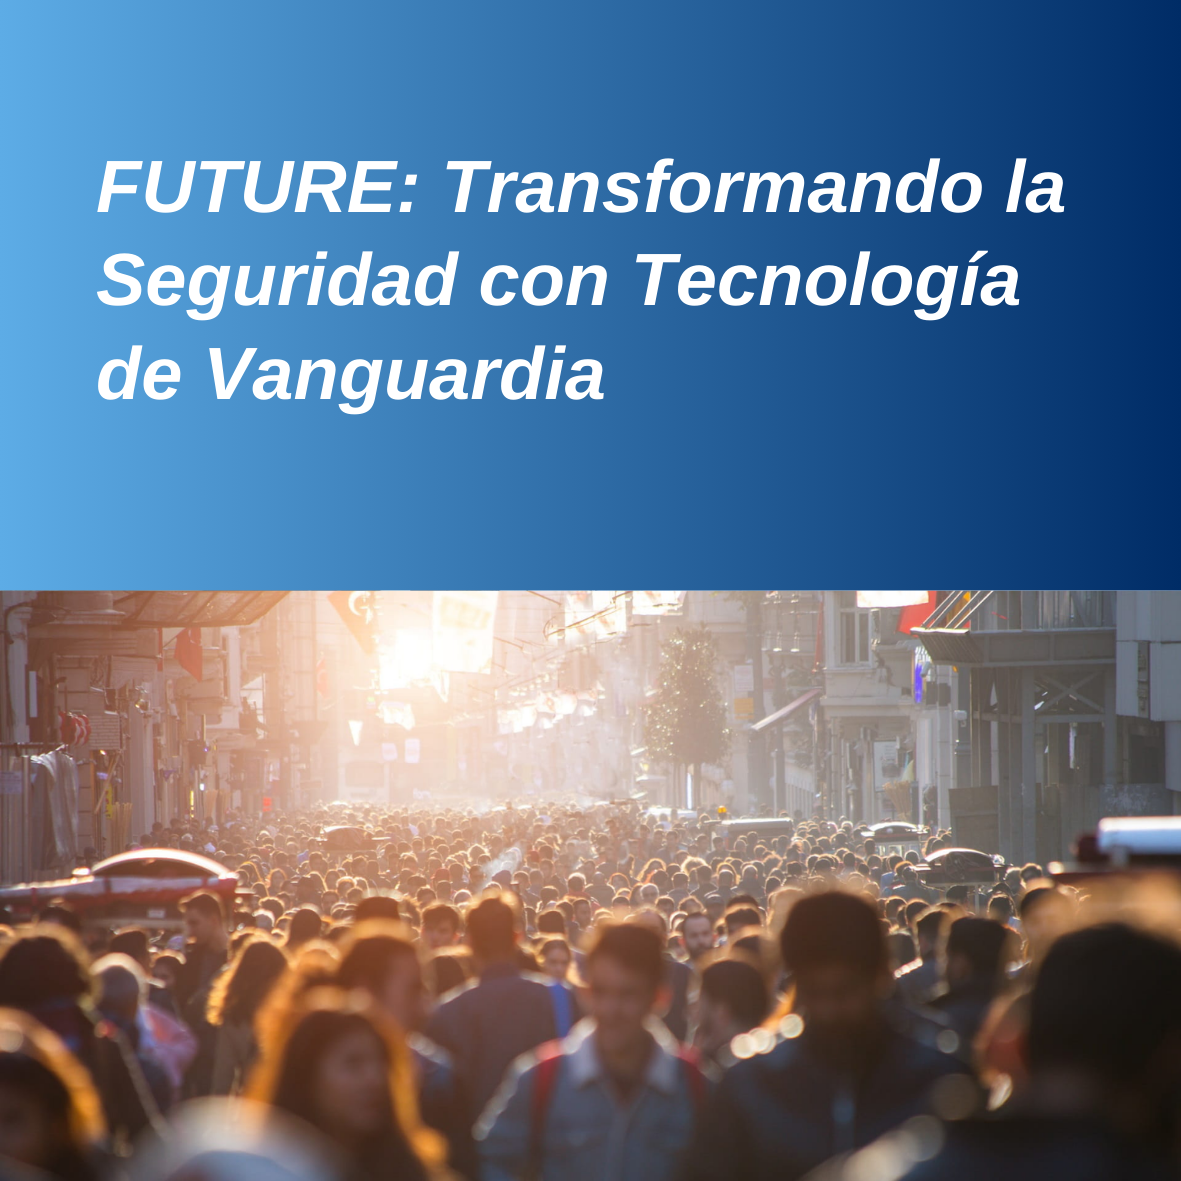 FUTURE: Transformando la Seguridad con Tecnología de Vanguardia